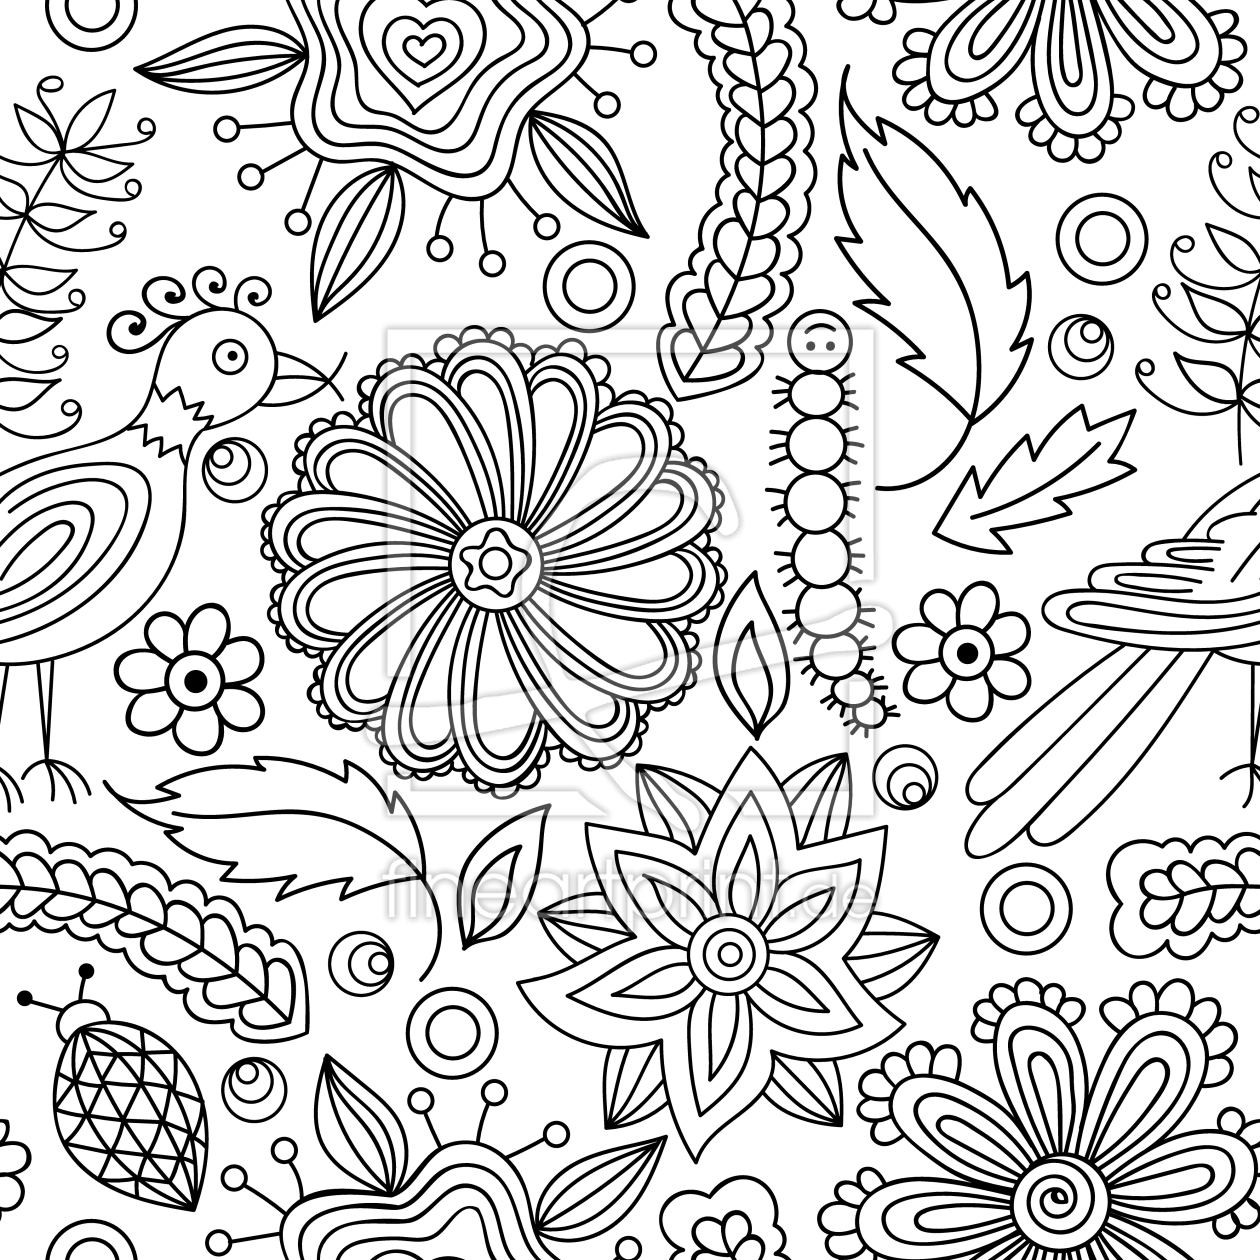 Bild-Nr.: 9013142 Süßes Natur-Malbuch erstellt von patterndesigns-com